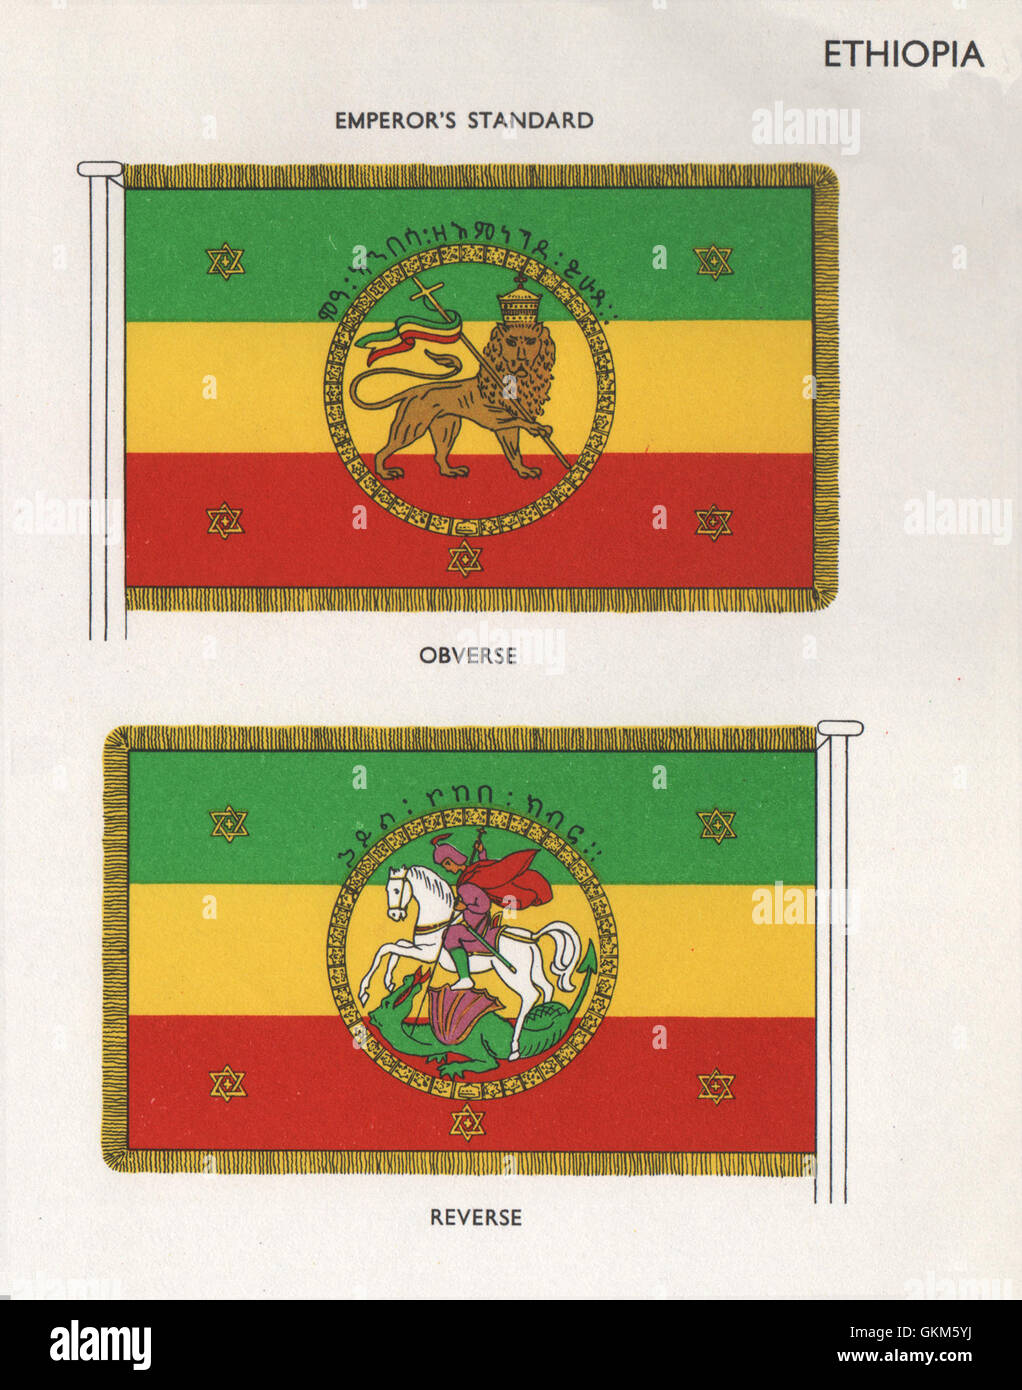 ÄTHIOPIEN-FLAGS. Kaiser ist Standard. Vorderseite. Reverse, Vintage print 1958 Stockfoto